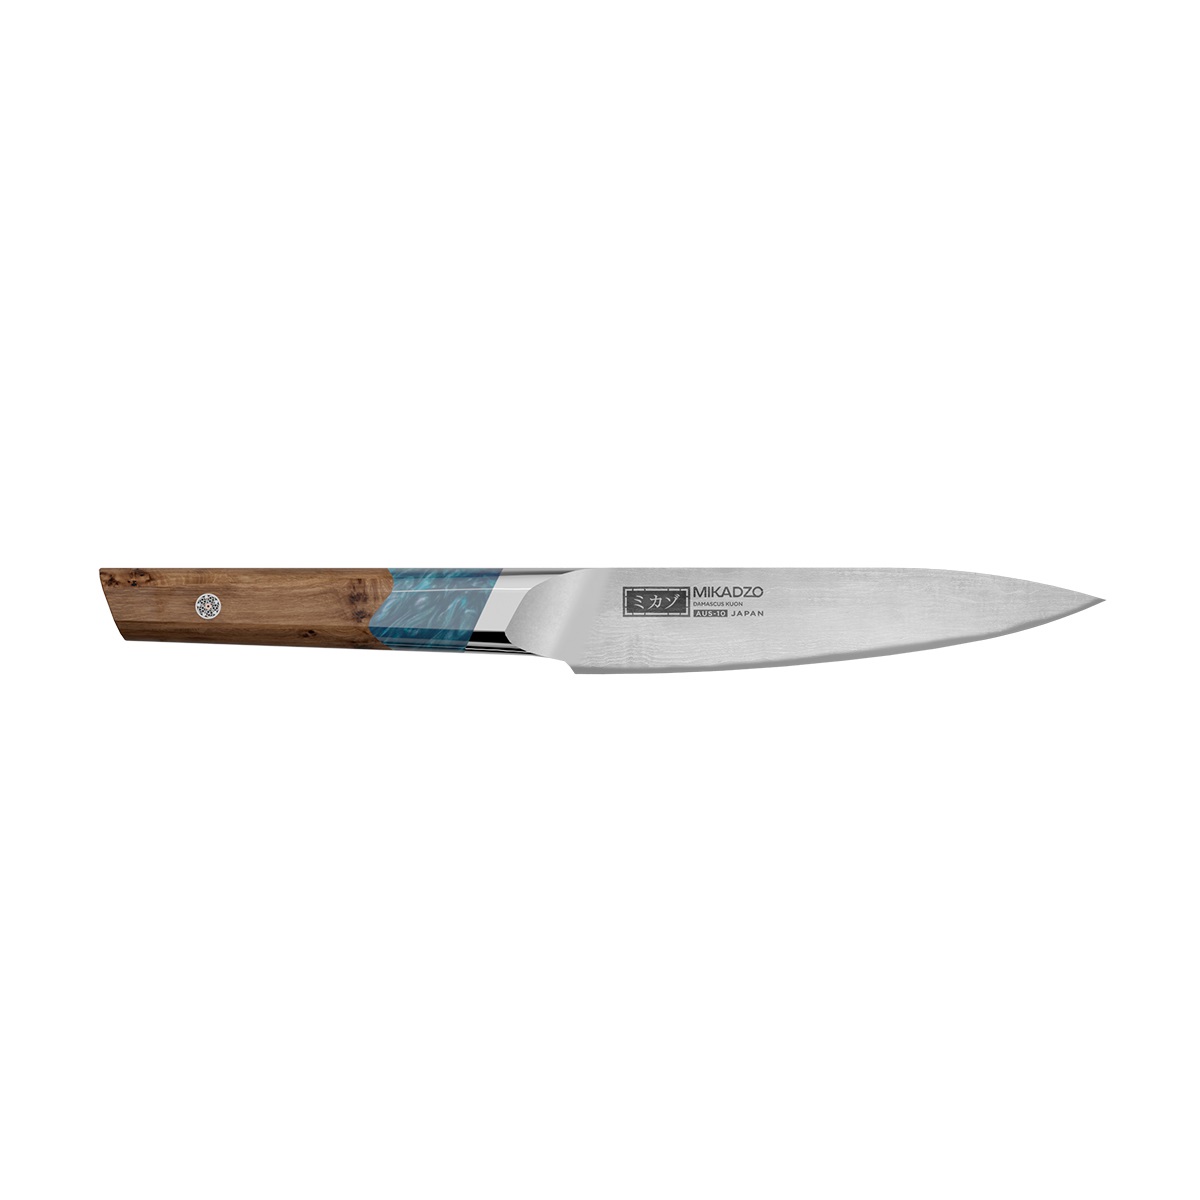 Кухонный нож Omoikiri Damascus Kuon 4992037 кухонный нож omoikiri micadzo yamata yk 01 59 pa 89